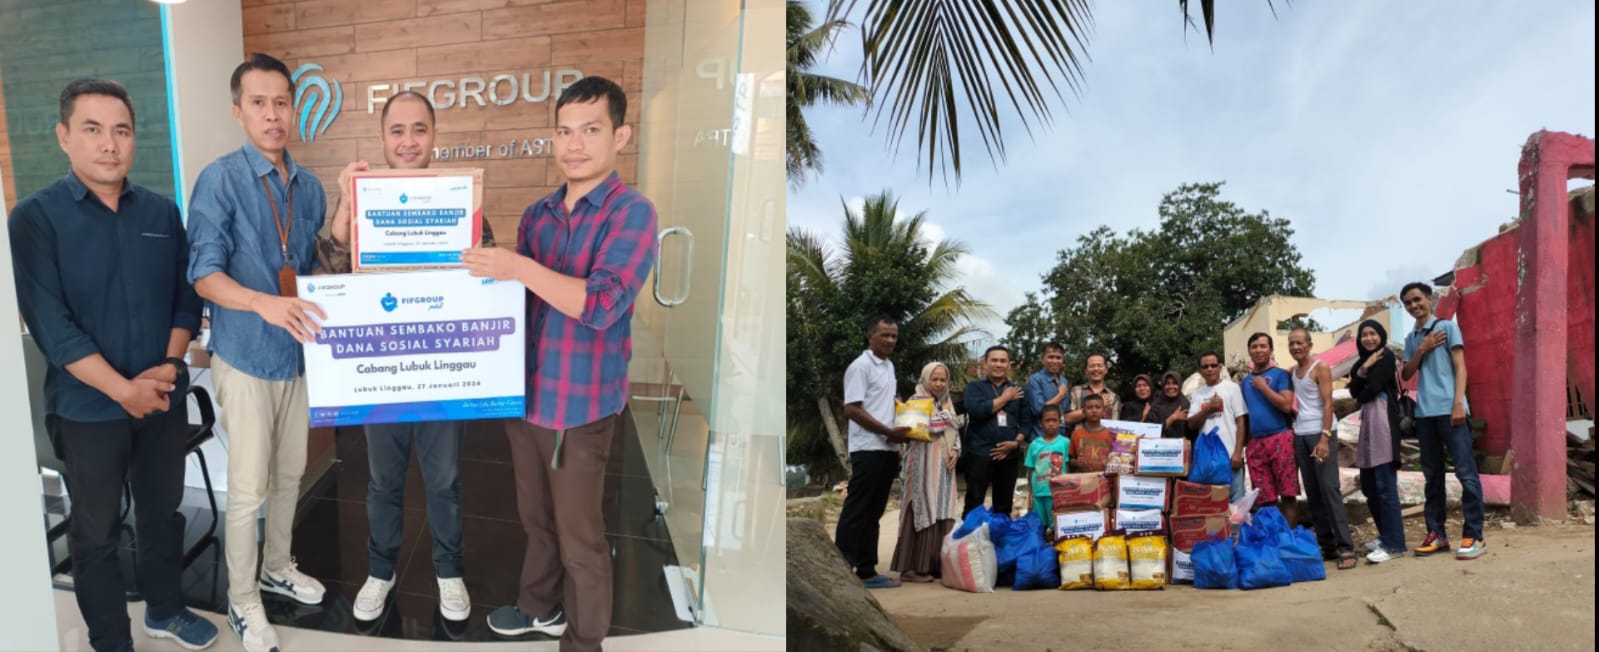 FIFGROUP Lubuk Linggau serahkan Paket Sembako Untuk Korban Banjir di Dua Lokasi di Kabupaten Musi Rawas Utara